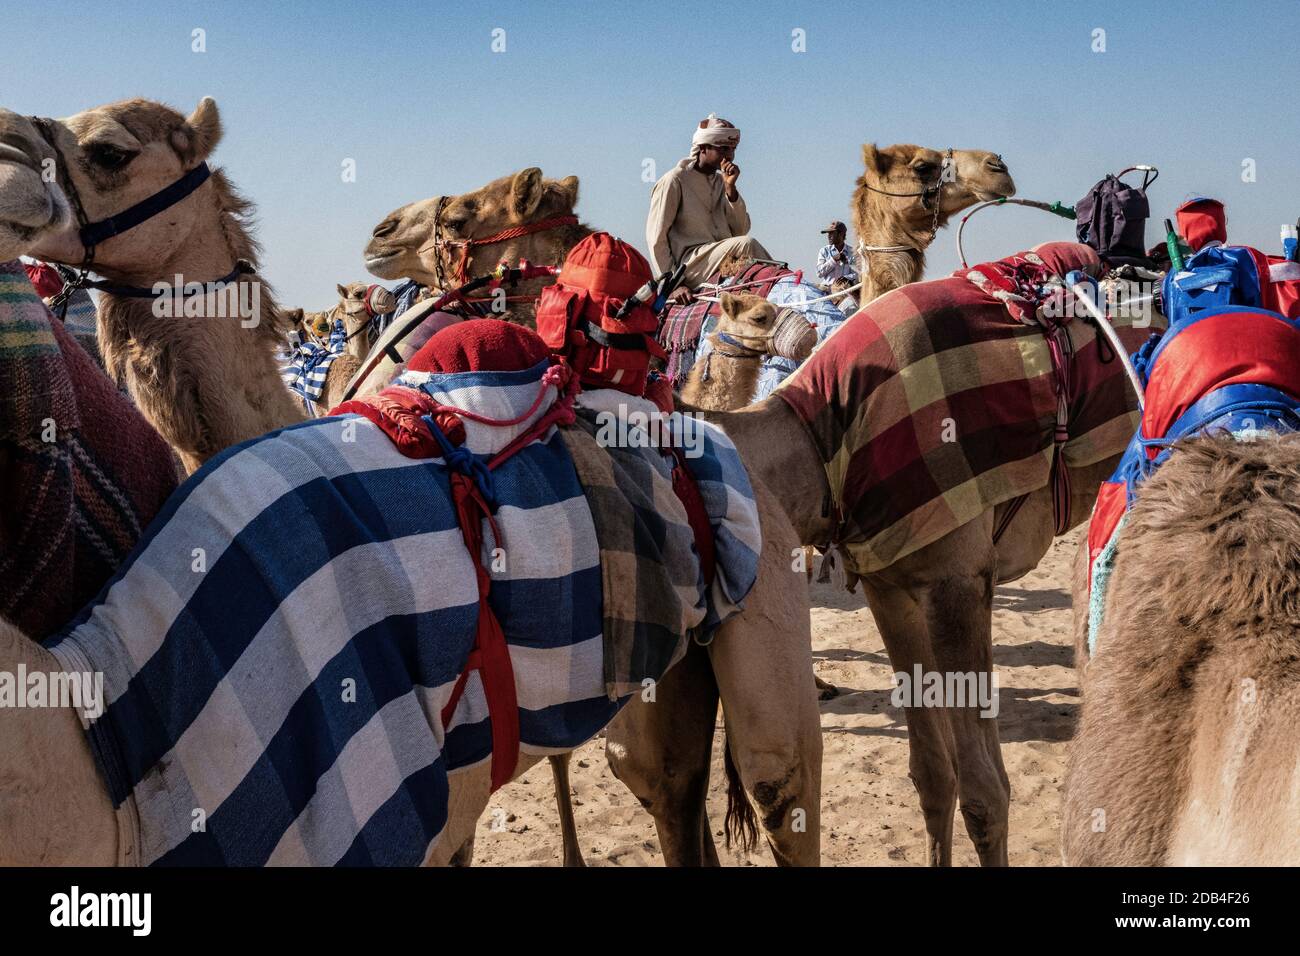 Emirats Arabes Unis / Al Dhaid / Camel Race in Région centrale de l'émirat de Sharjah aux États-Unis EmiratesLes manipulateurs sécurisent également les petites ele Banque D'Images